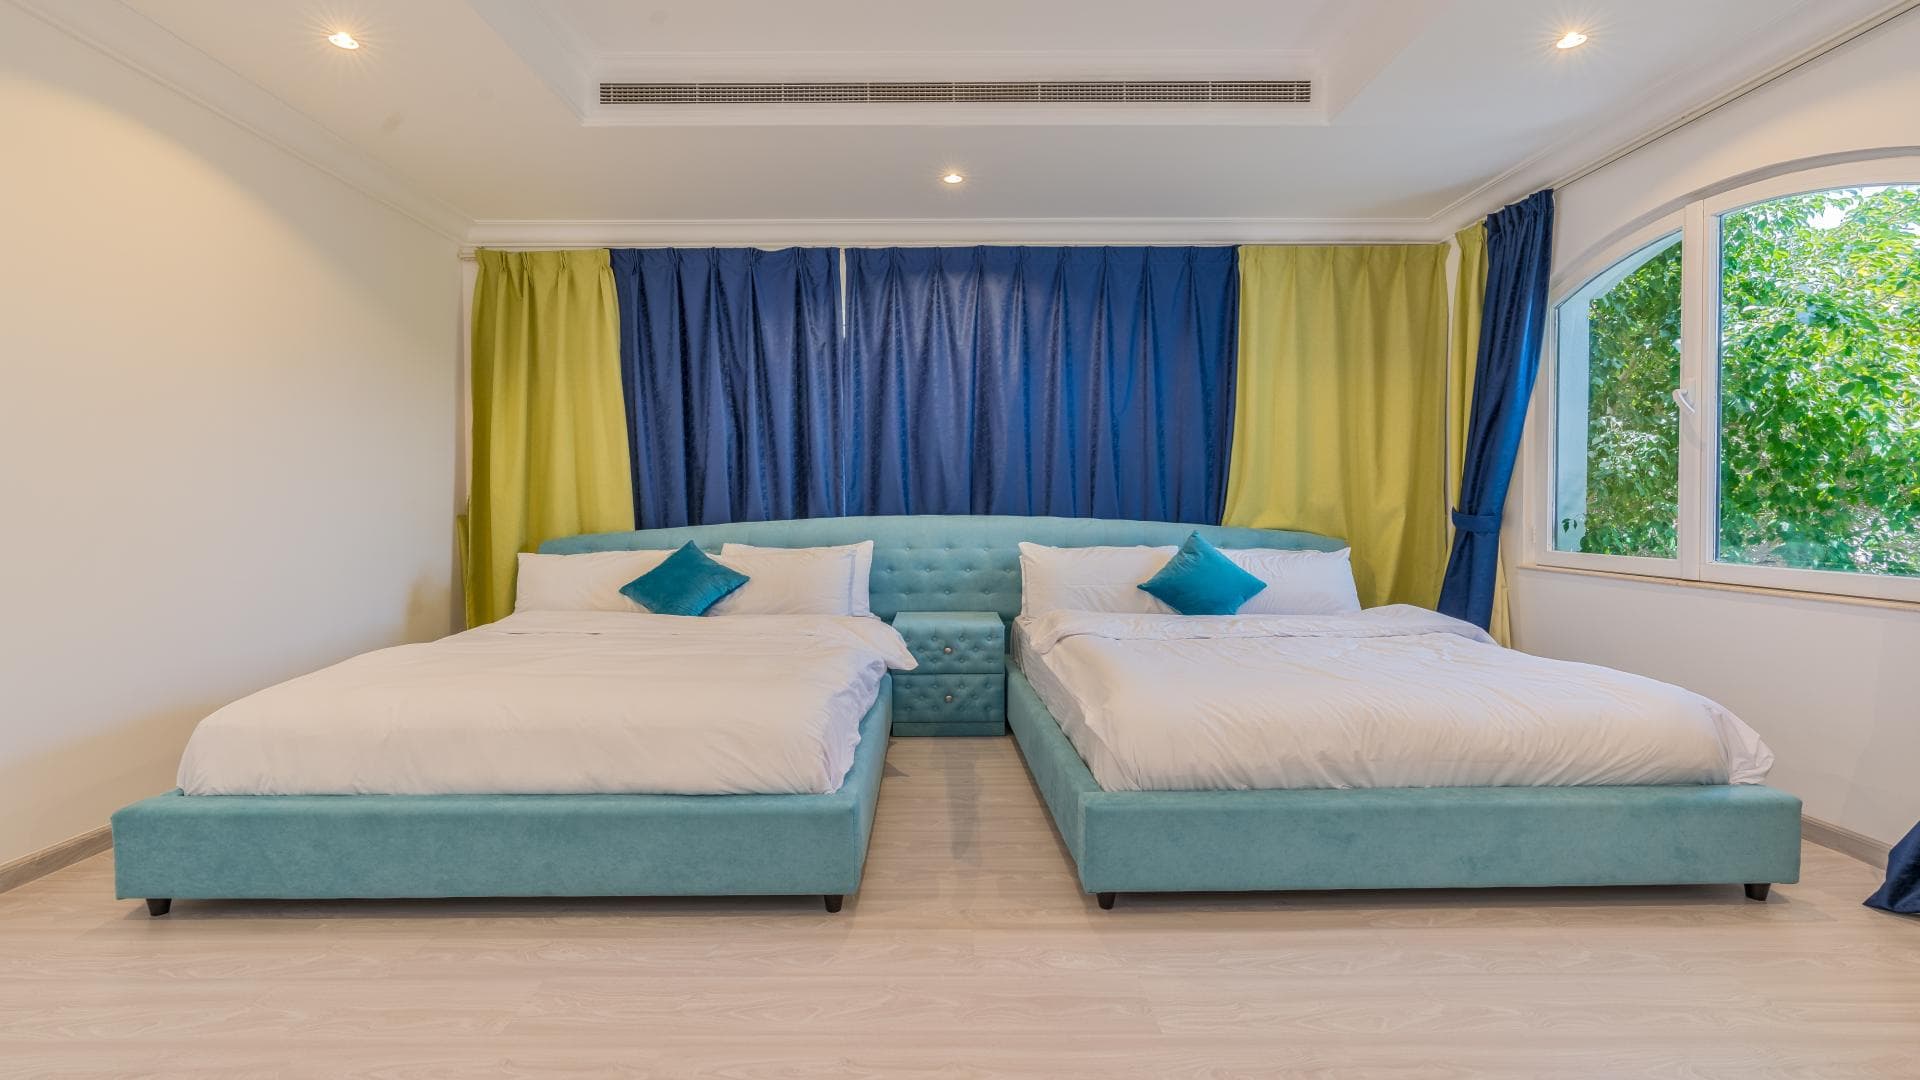 4 Bedroom Villa For Rent Mughal Lp36827 30c3629e37d6d000.jpg